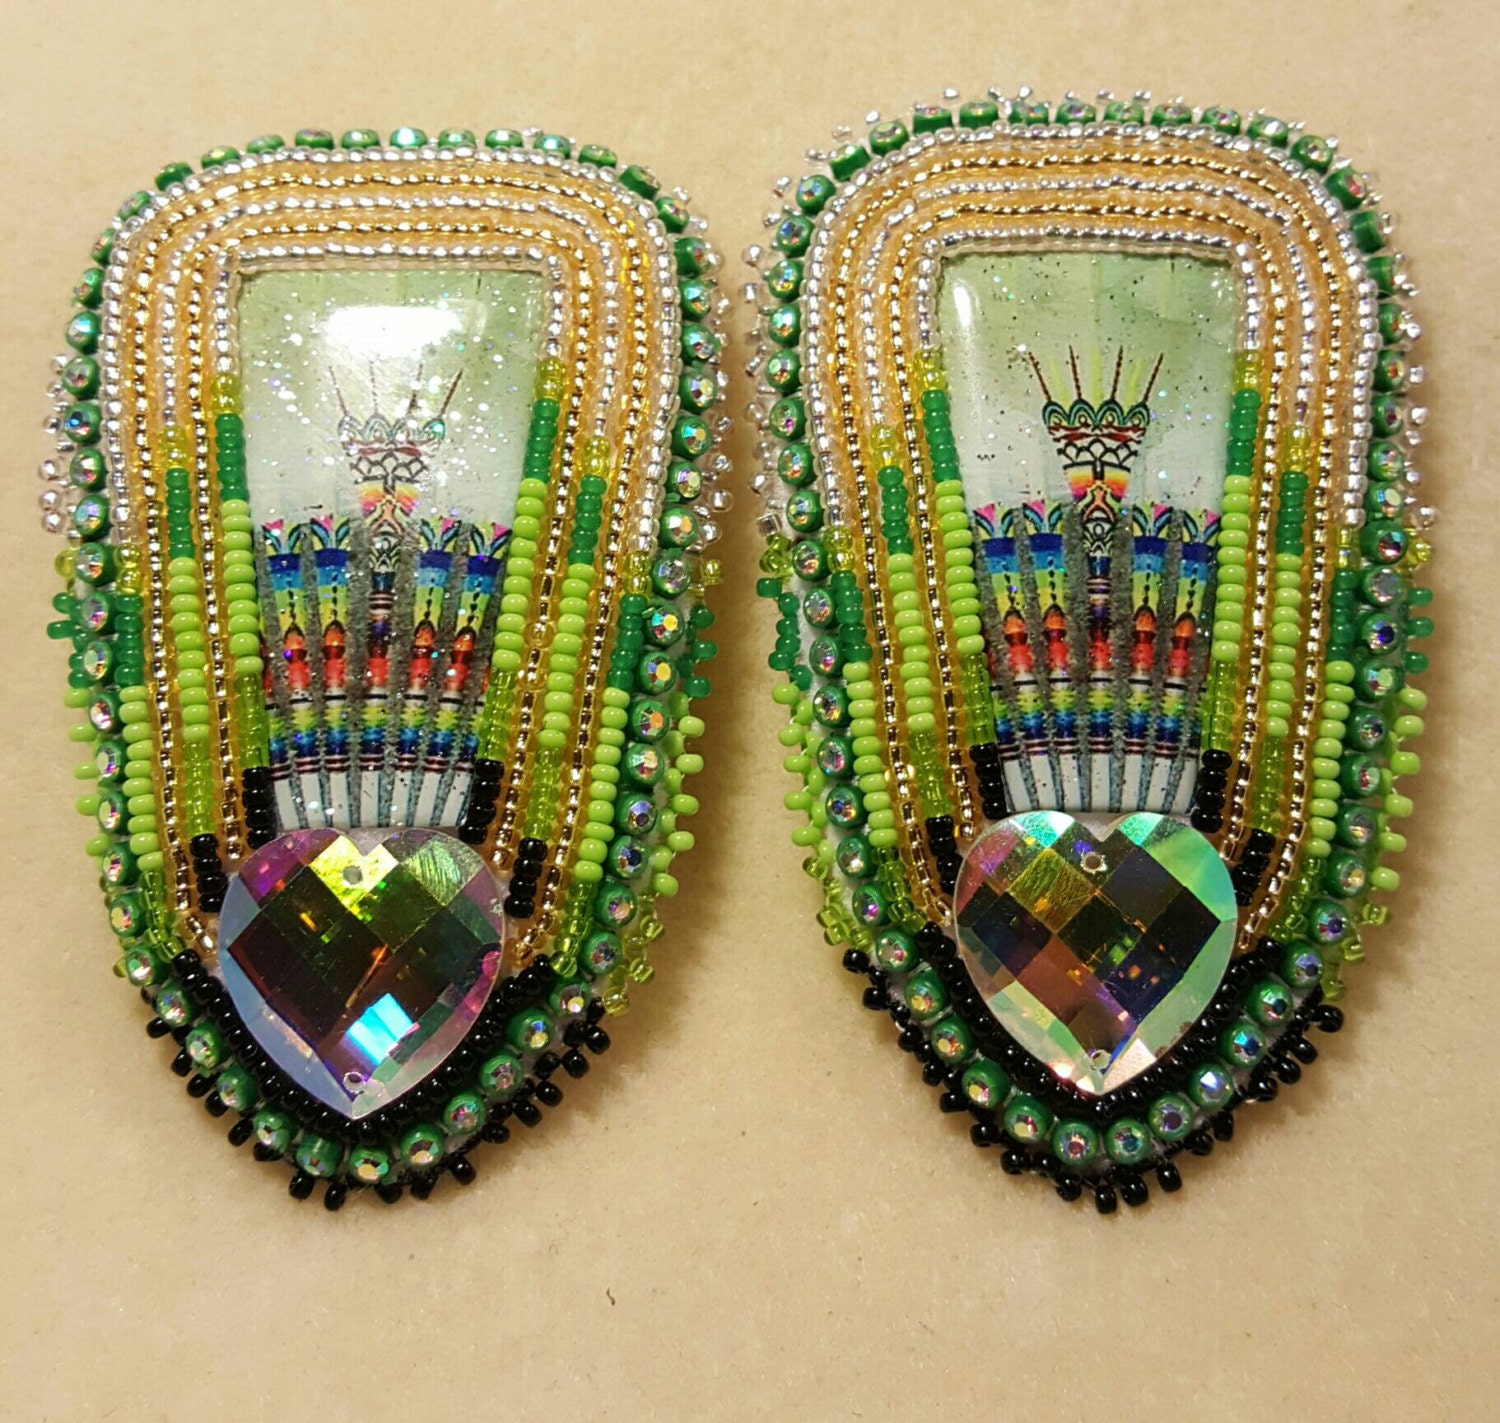 Native American made Beaded Pow wow Fan earrings